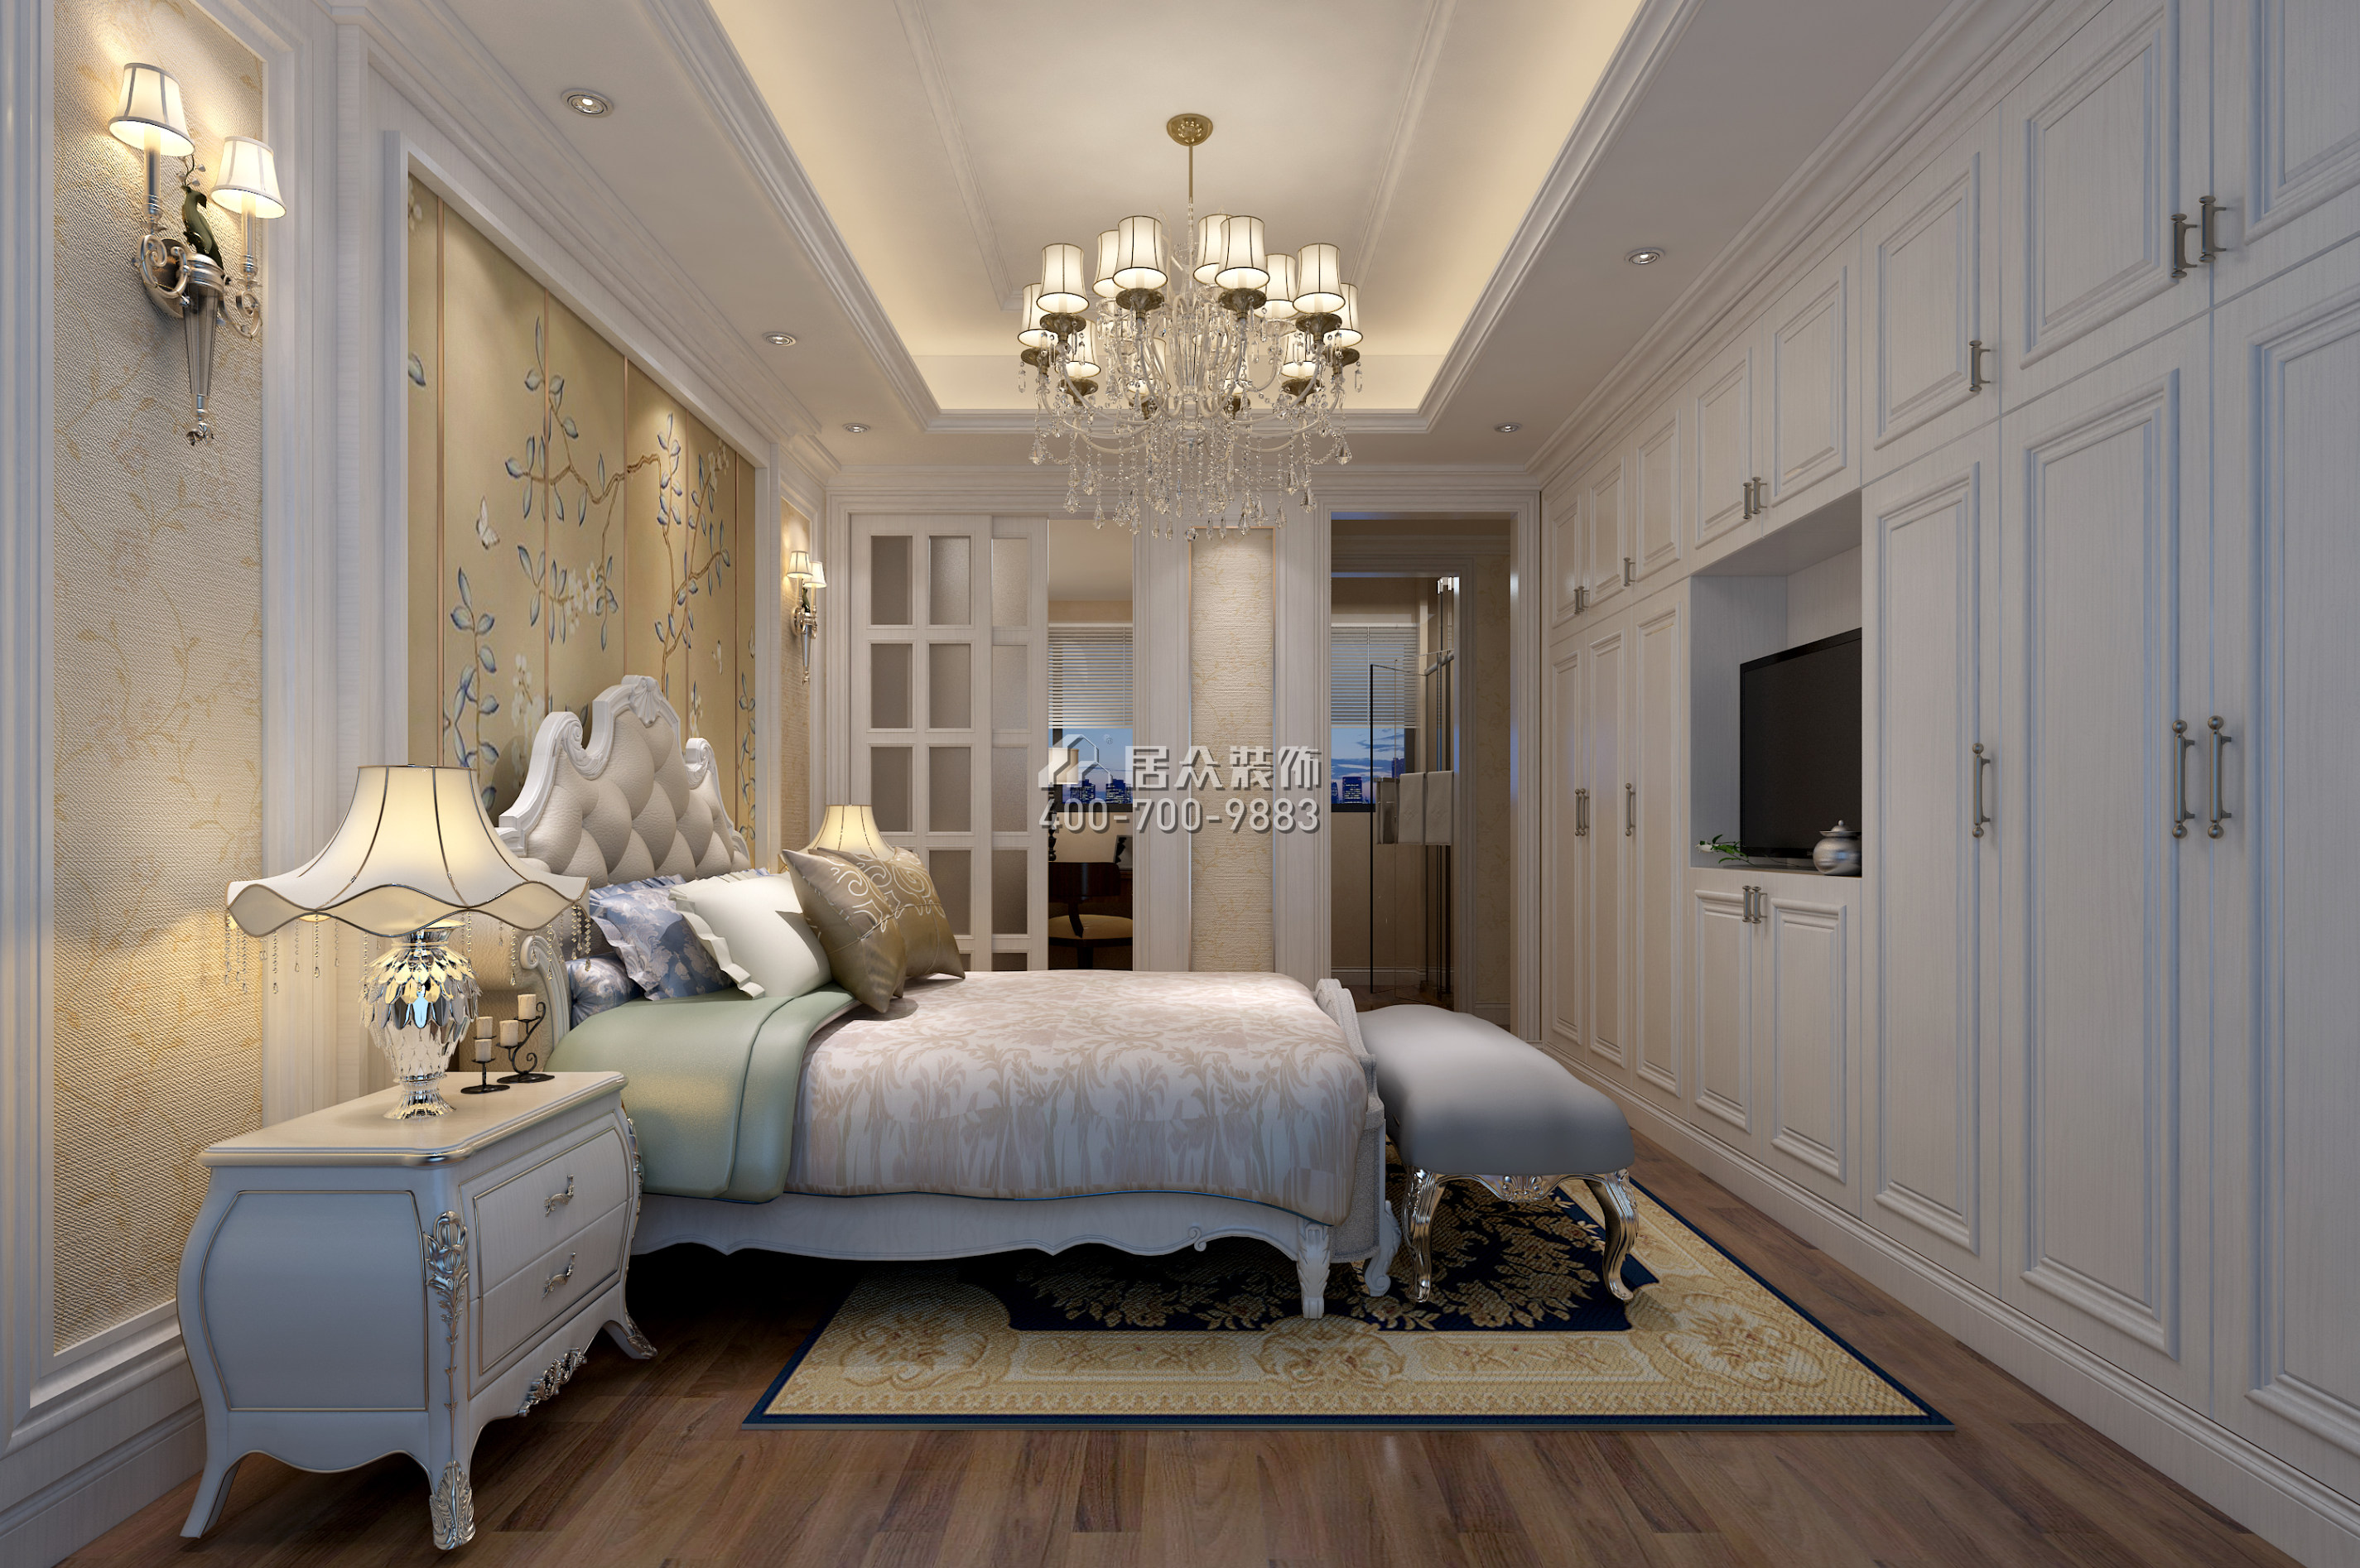 南海玫瑰园125平方米现代简约风格平层户型卧室装修效果图